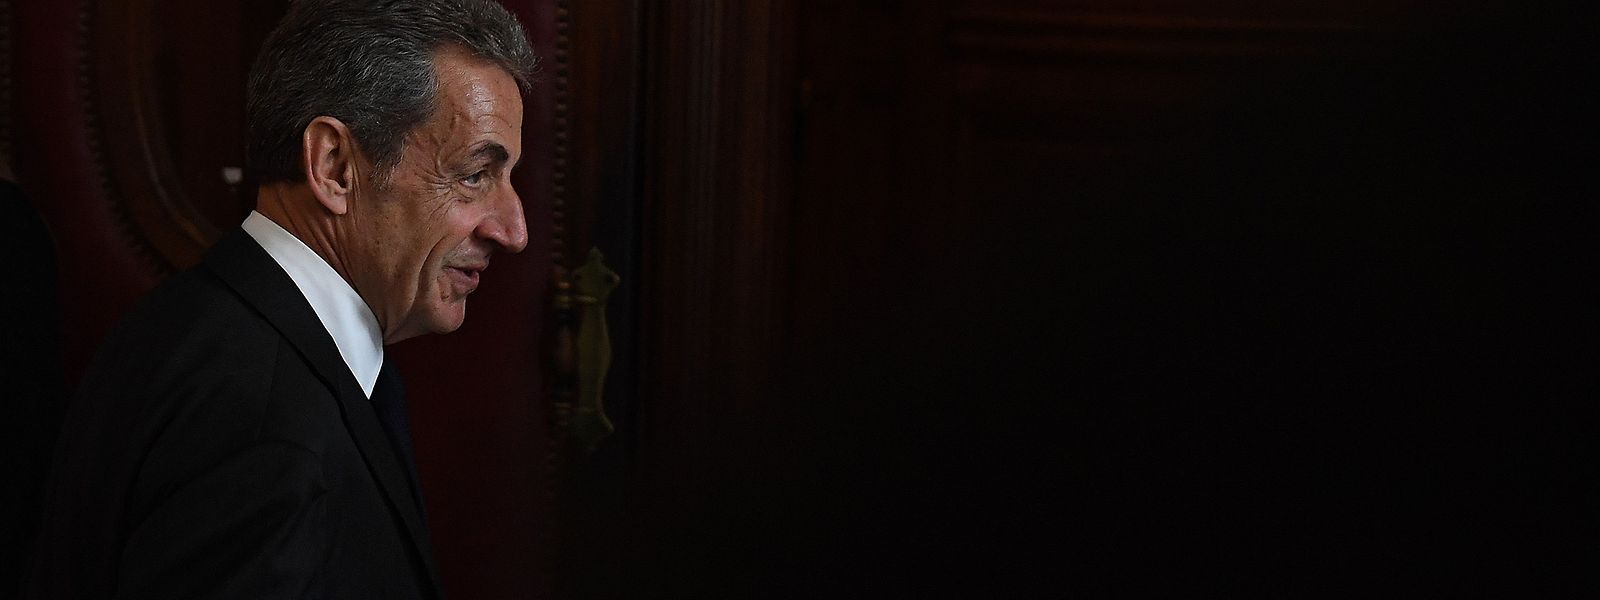 Nicolas Sarkozy muss sich erneut vor Gericht verantworten, nicht das erste und nicht das letzte Mal.